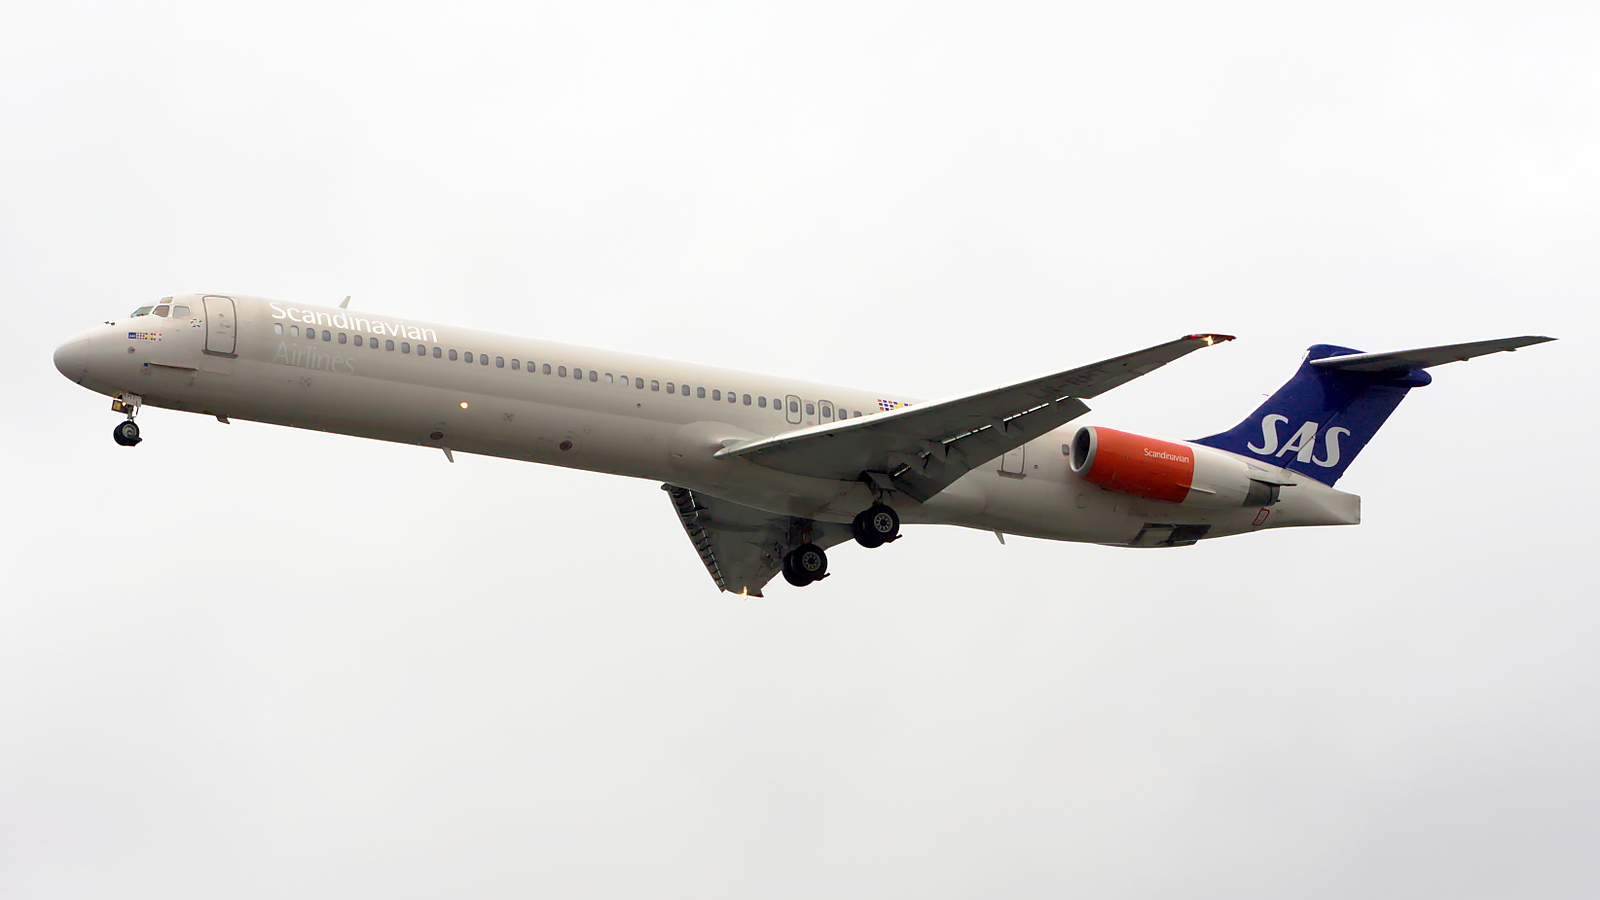 LN-RMT ✈ Scandinavian Airlines McDonnell Douglas MD-82 @ London-Heathrow